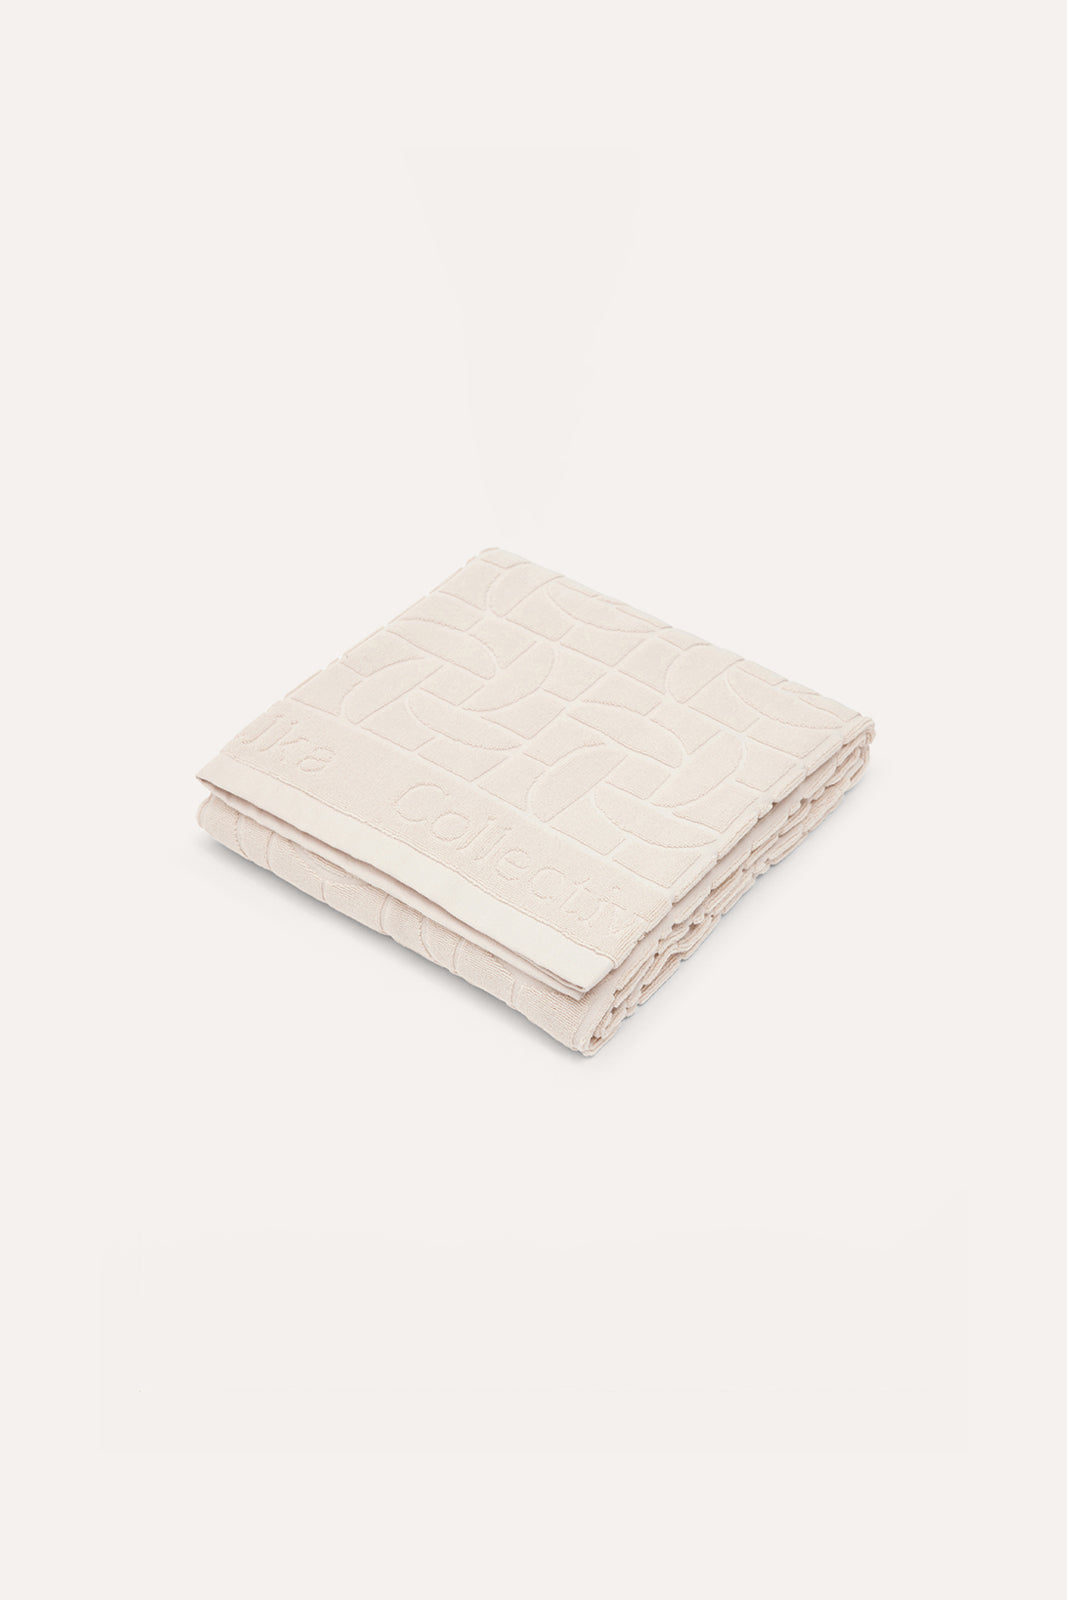 Santoria Towel - Ecru